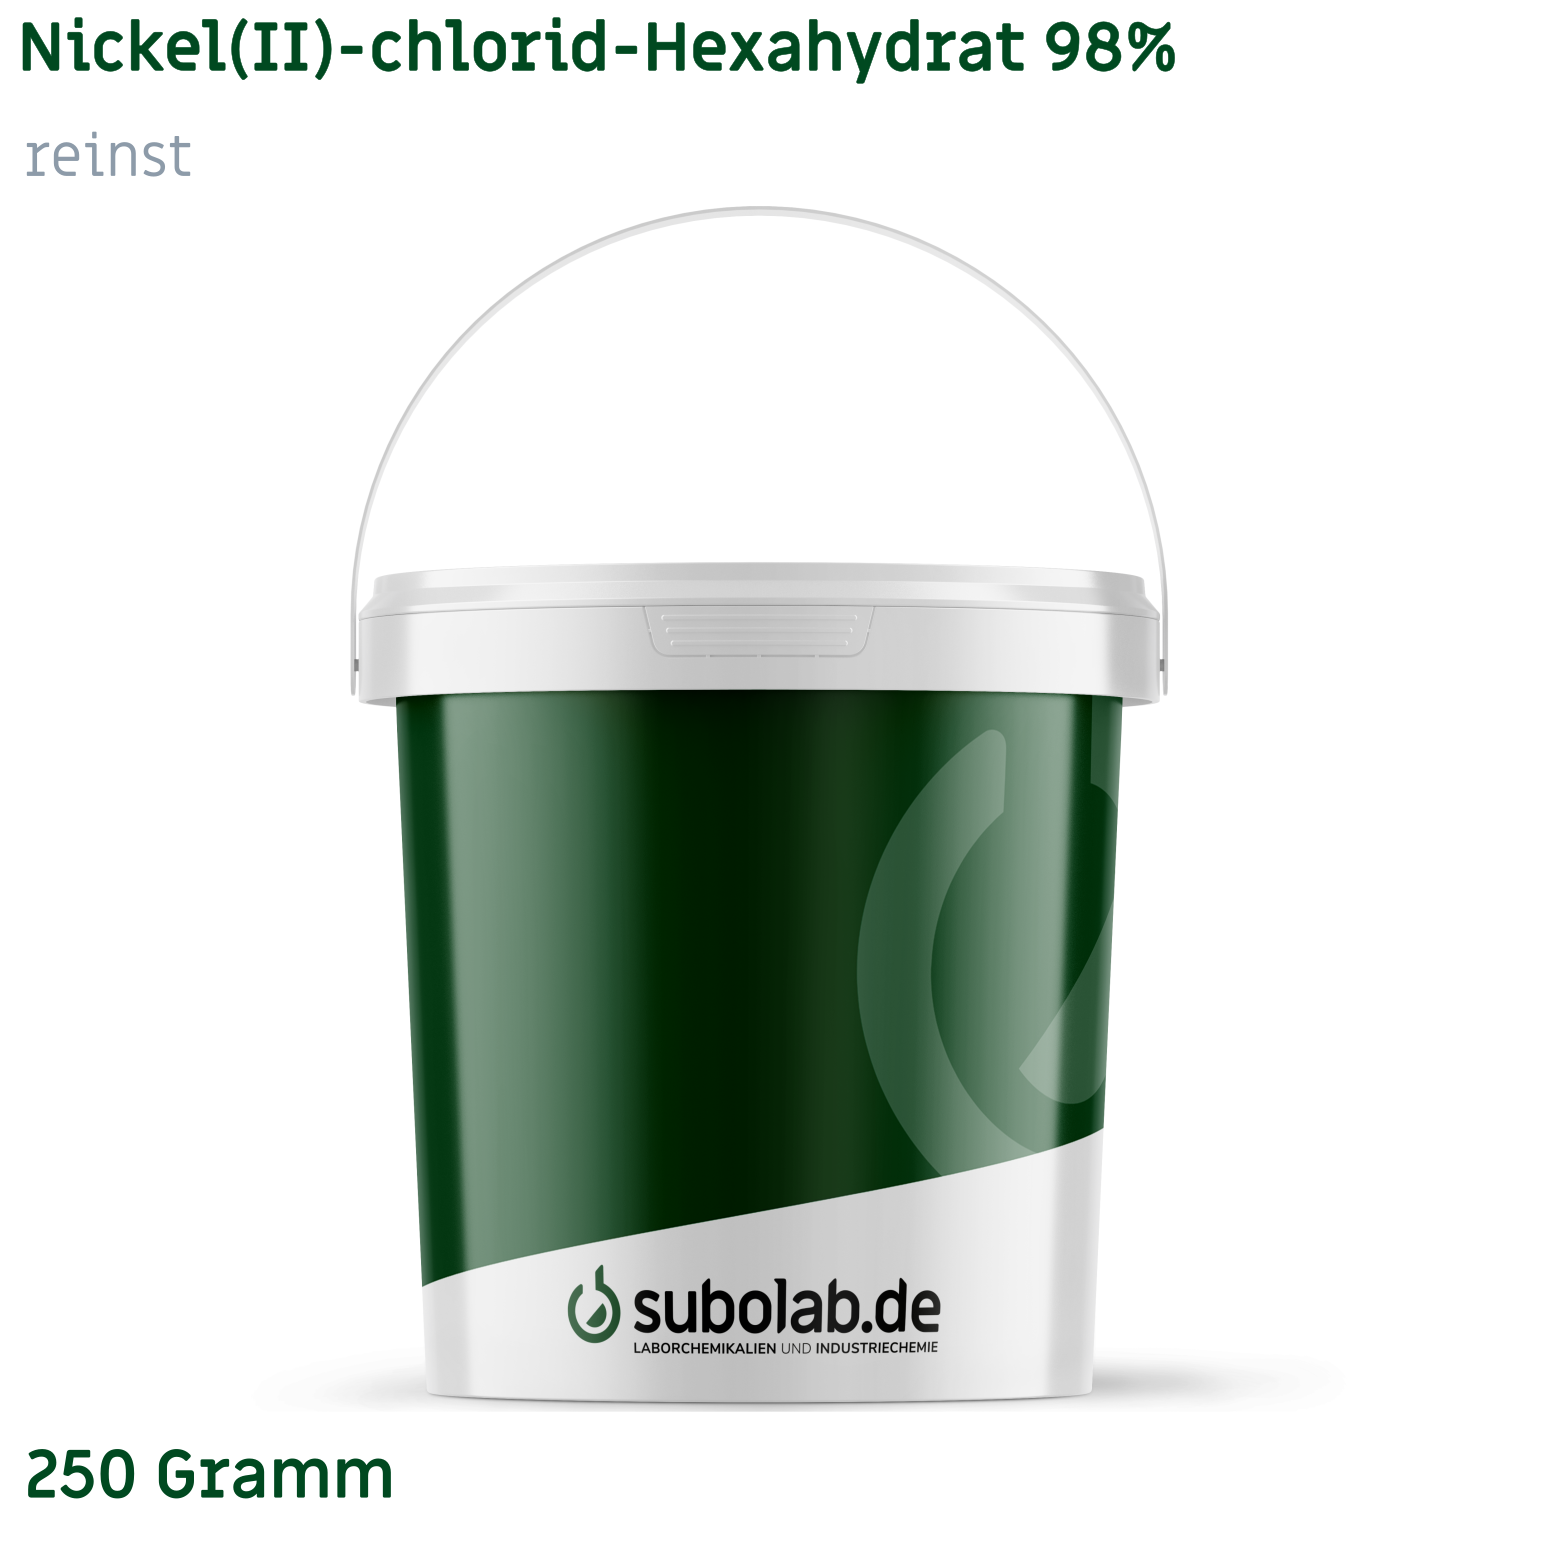 Bild von Nickel(II)-chlorid - Hexahydrat 98% reinst (250 Gramm)